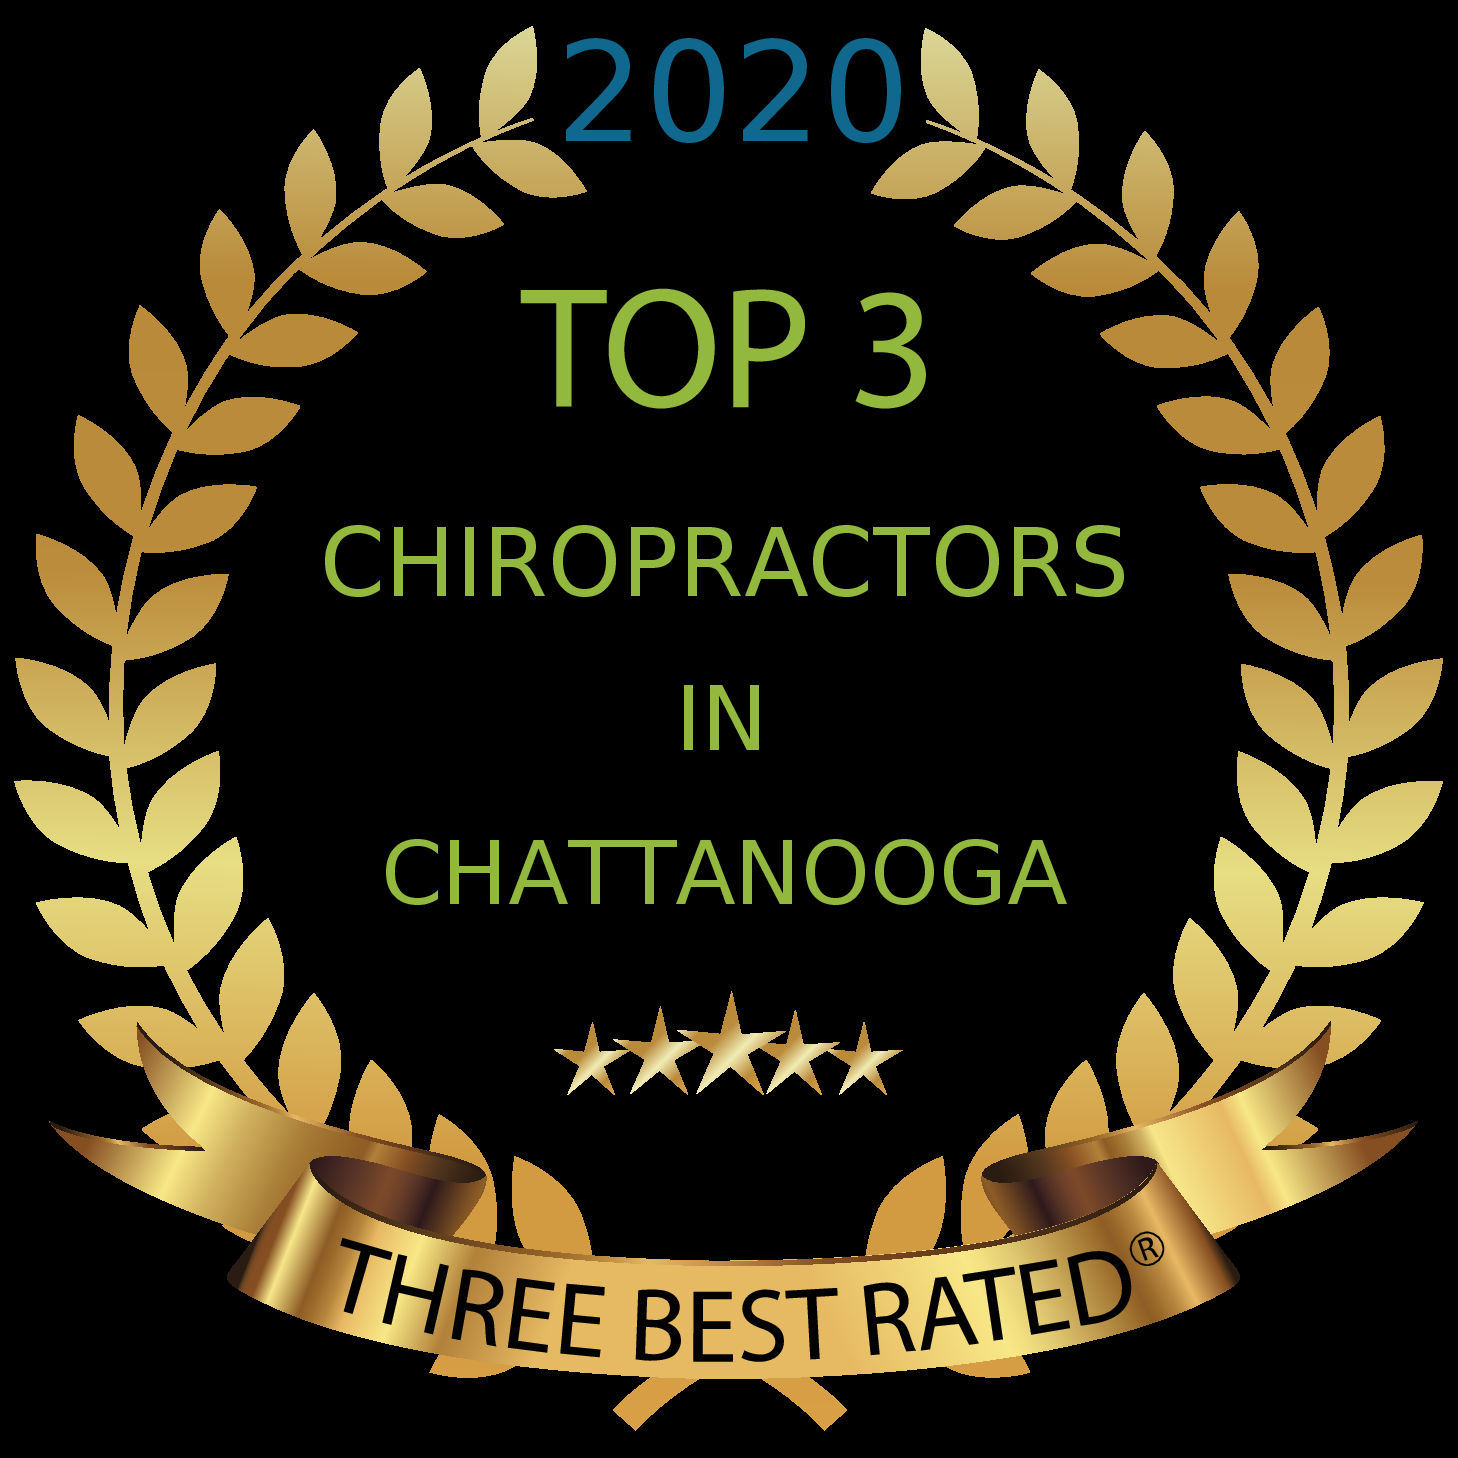 Chattanooga Chiro Award 2020